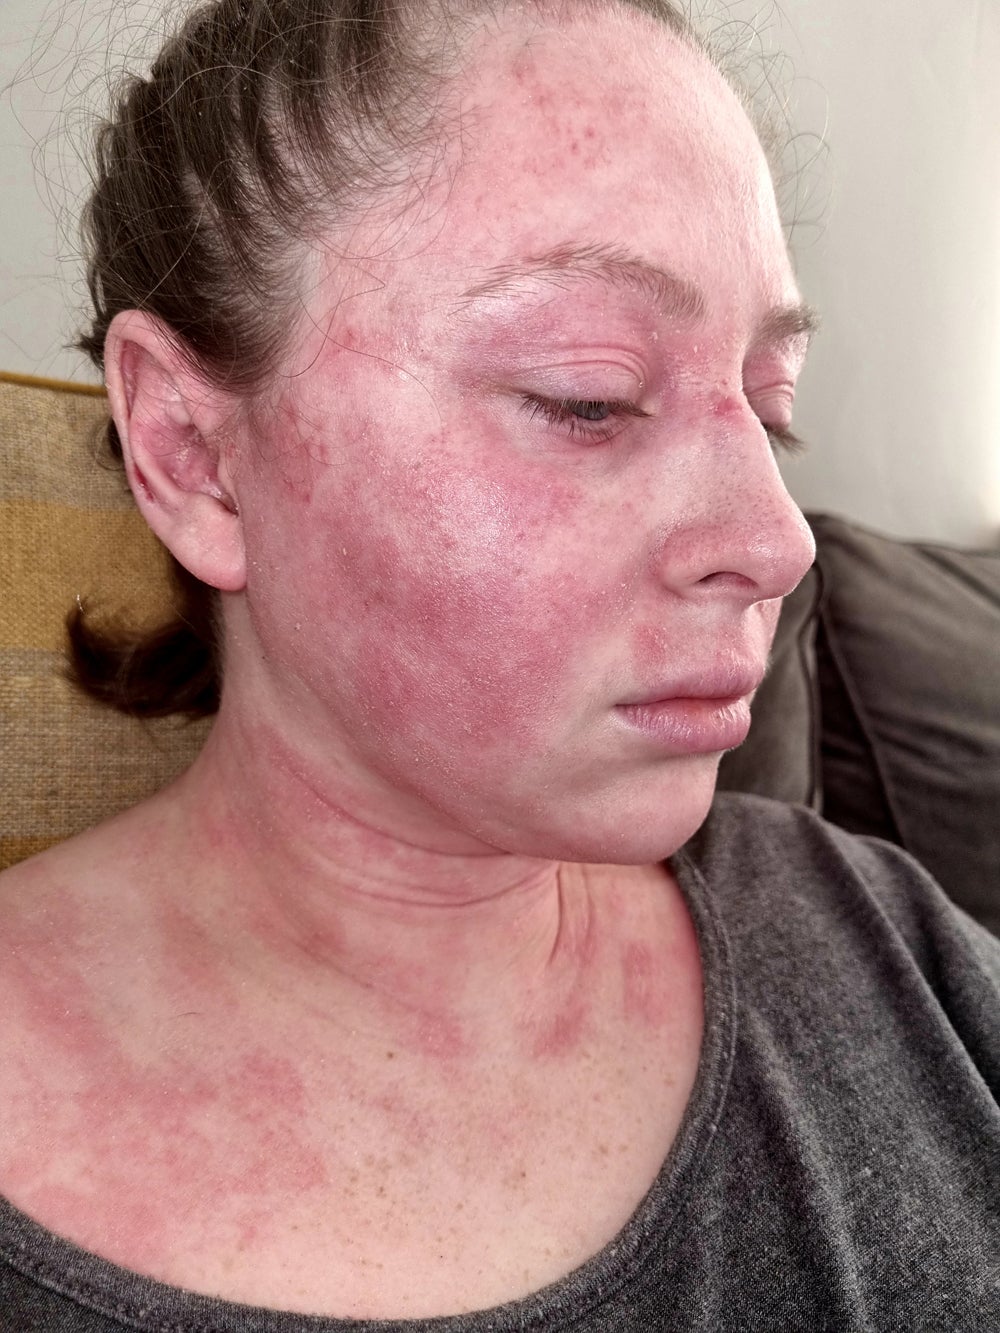 La dermatitis atópica de Kimberley le cubrió la cara y el cuello en marzo de 2020